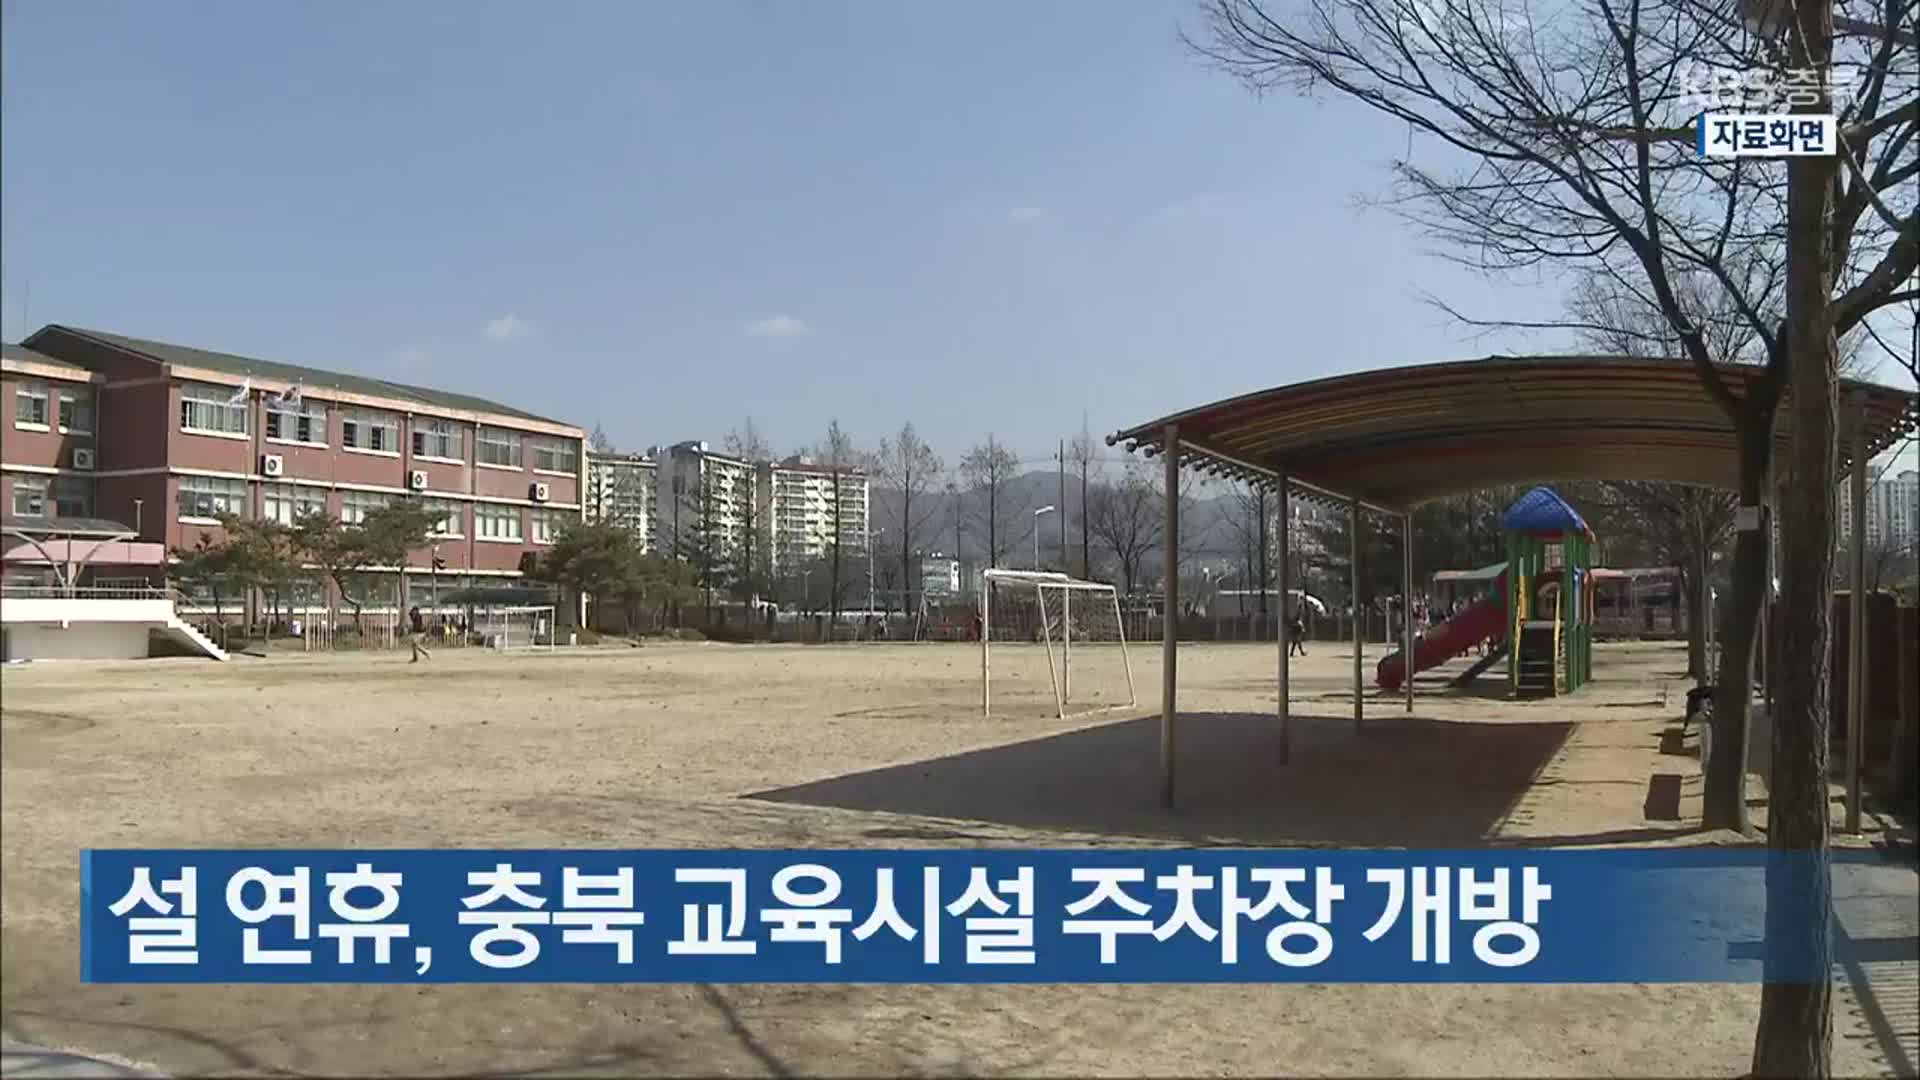 설 연휴, 충북 교육시설 주차장 개방